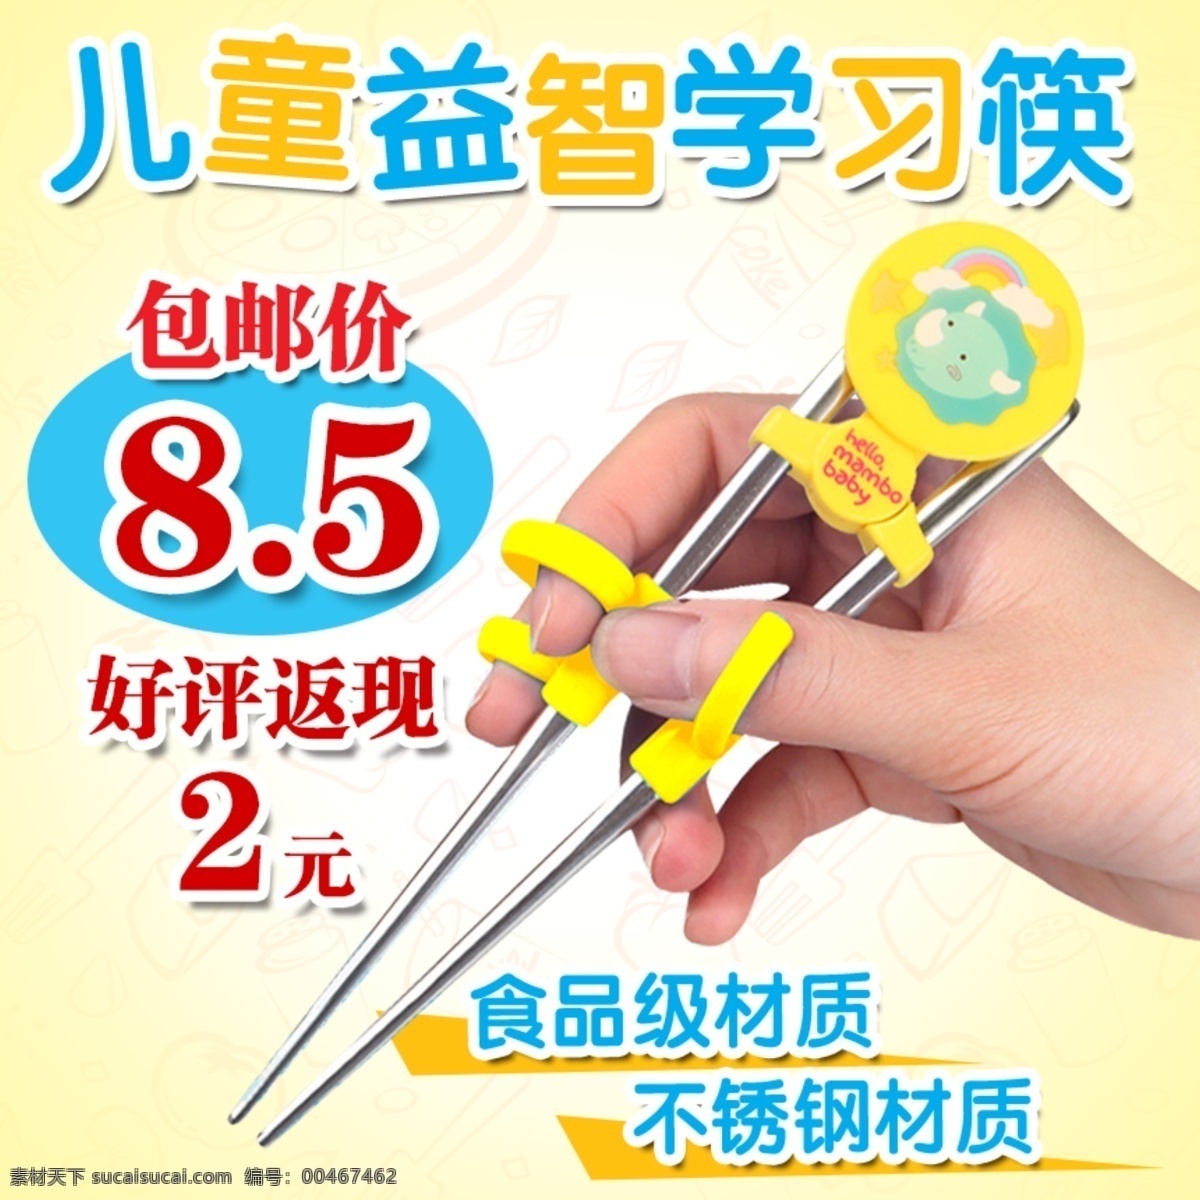 儿童 学习 筷 主 图 婴儿用品 母婴产品主图 淘宝直通车 筷子 学习筷 白色